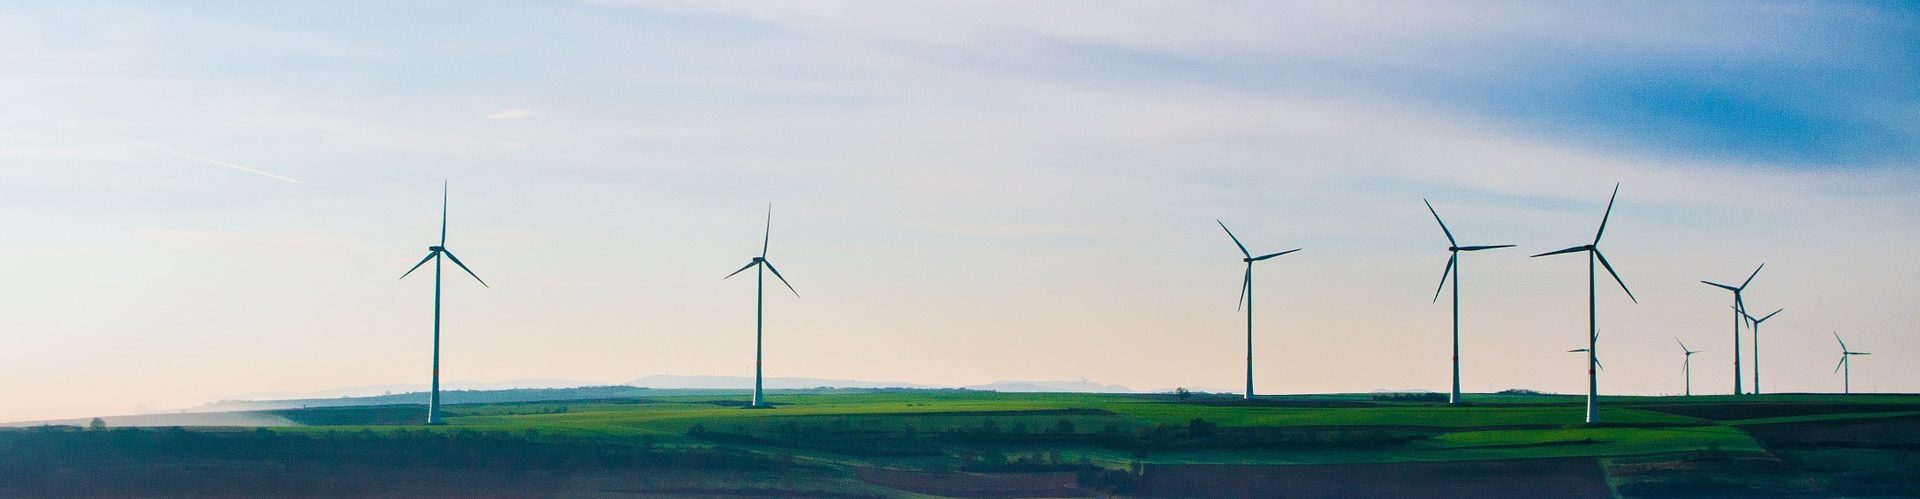 Image d'éoliennes